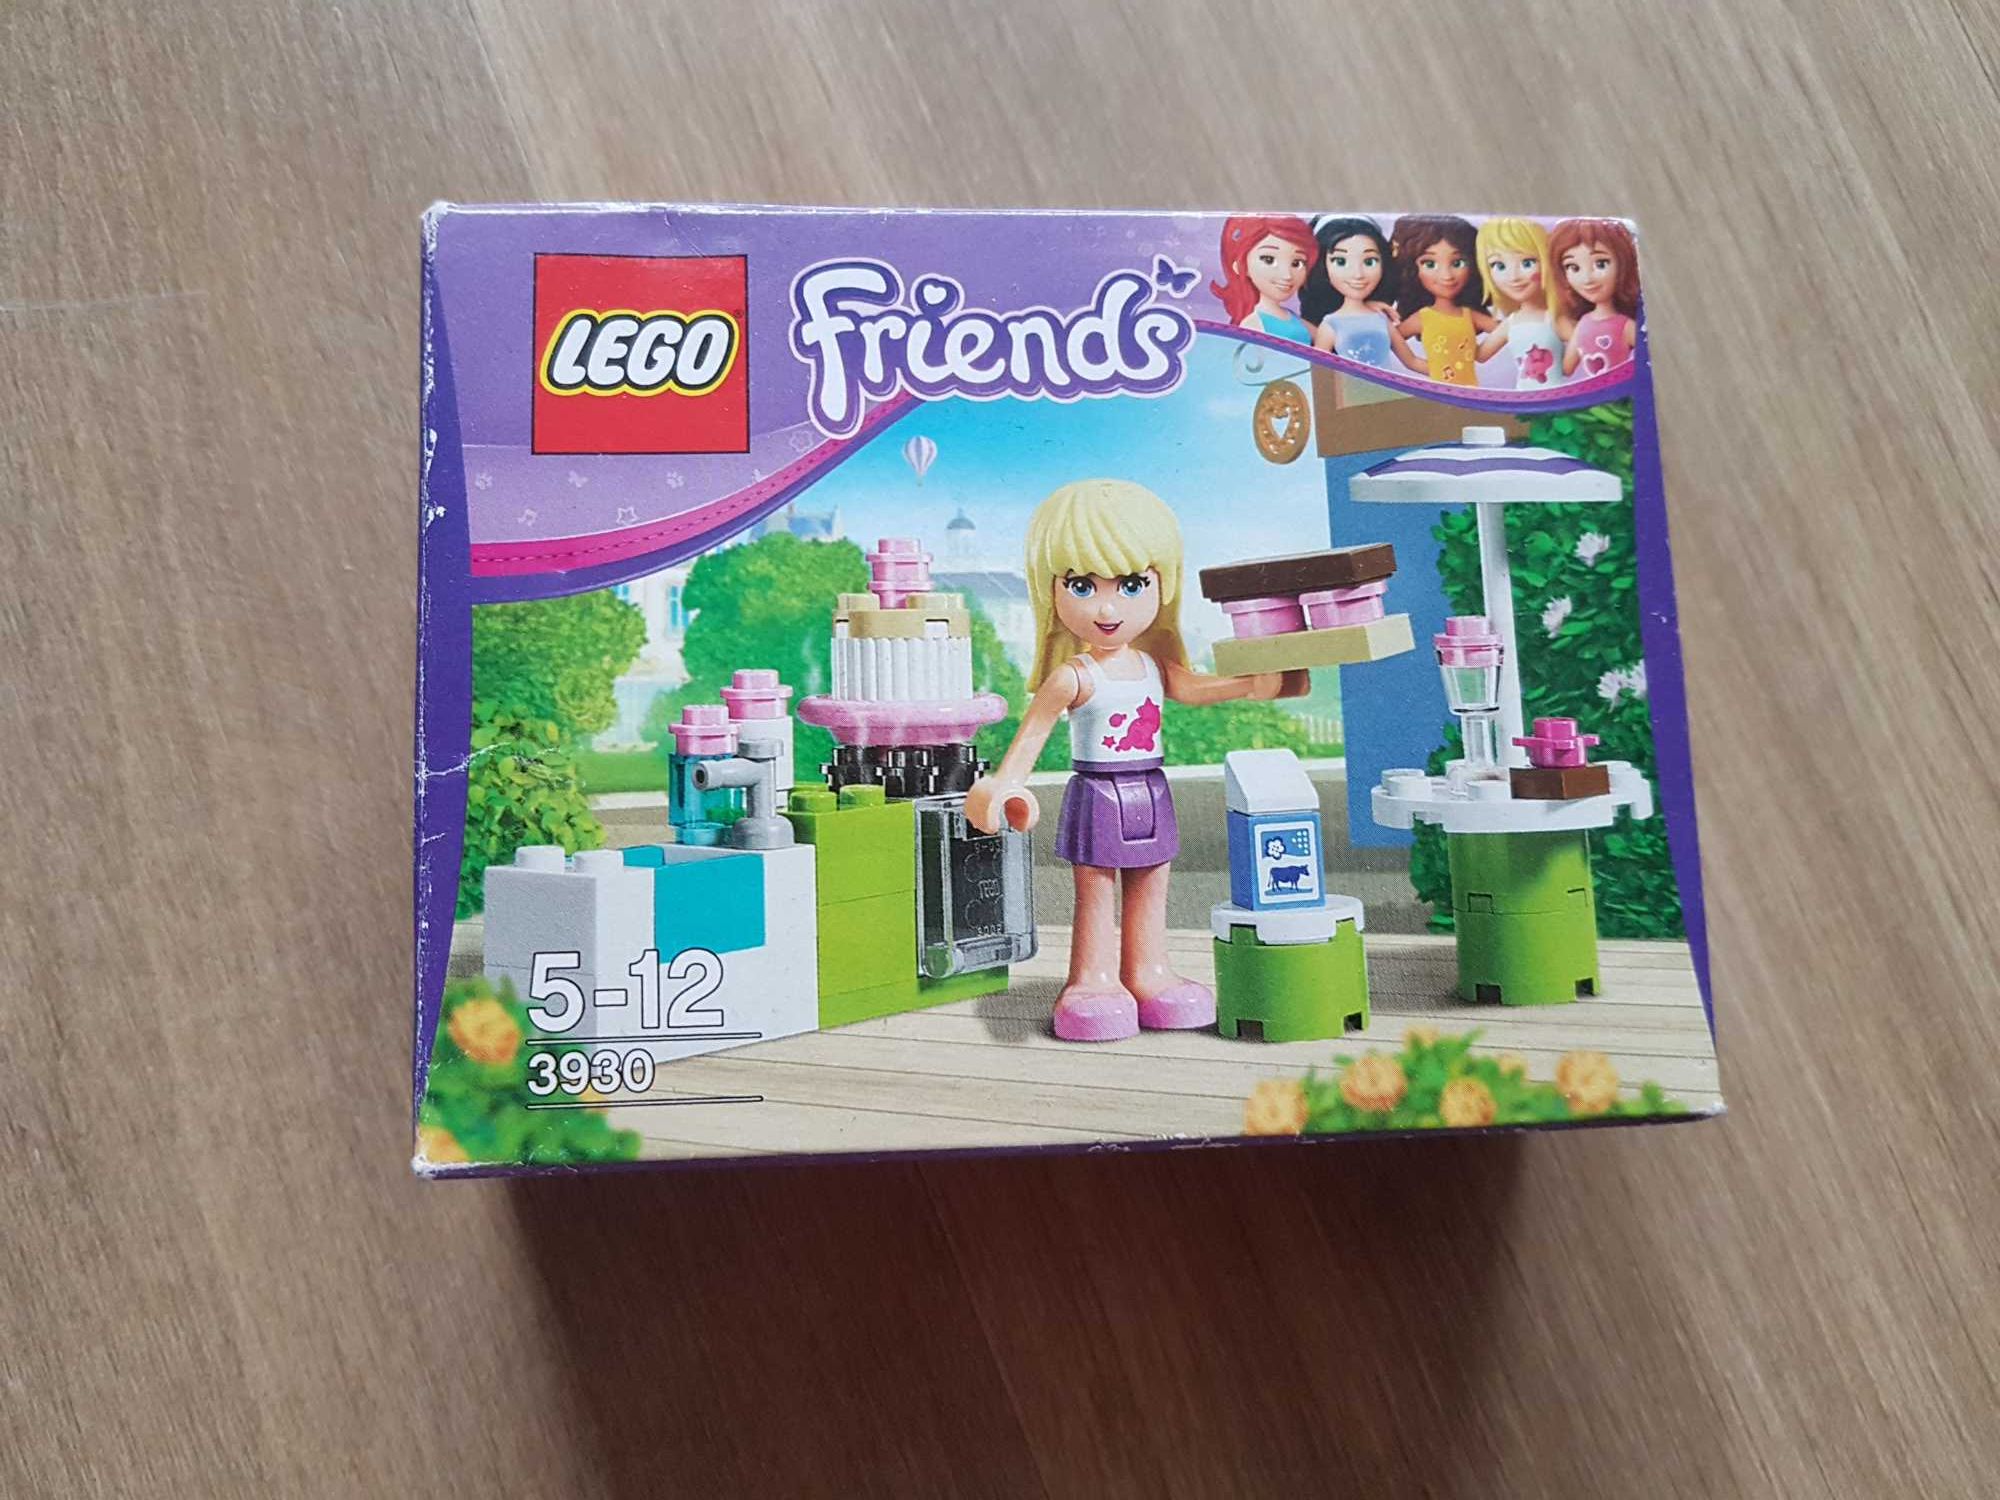 Klocki LEGO Friends 3930 Mała kuchnia Stephanie wiek 5-12 lat